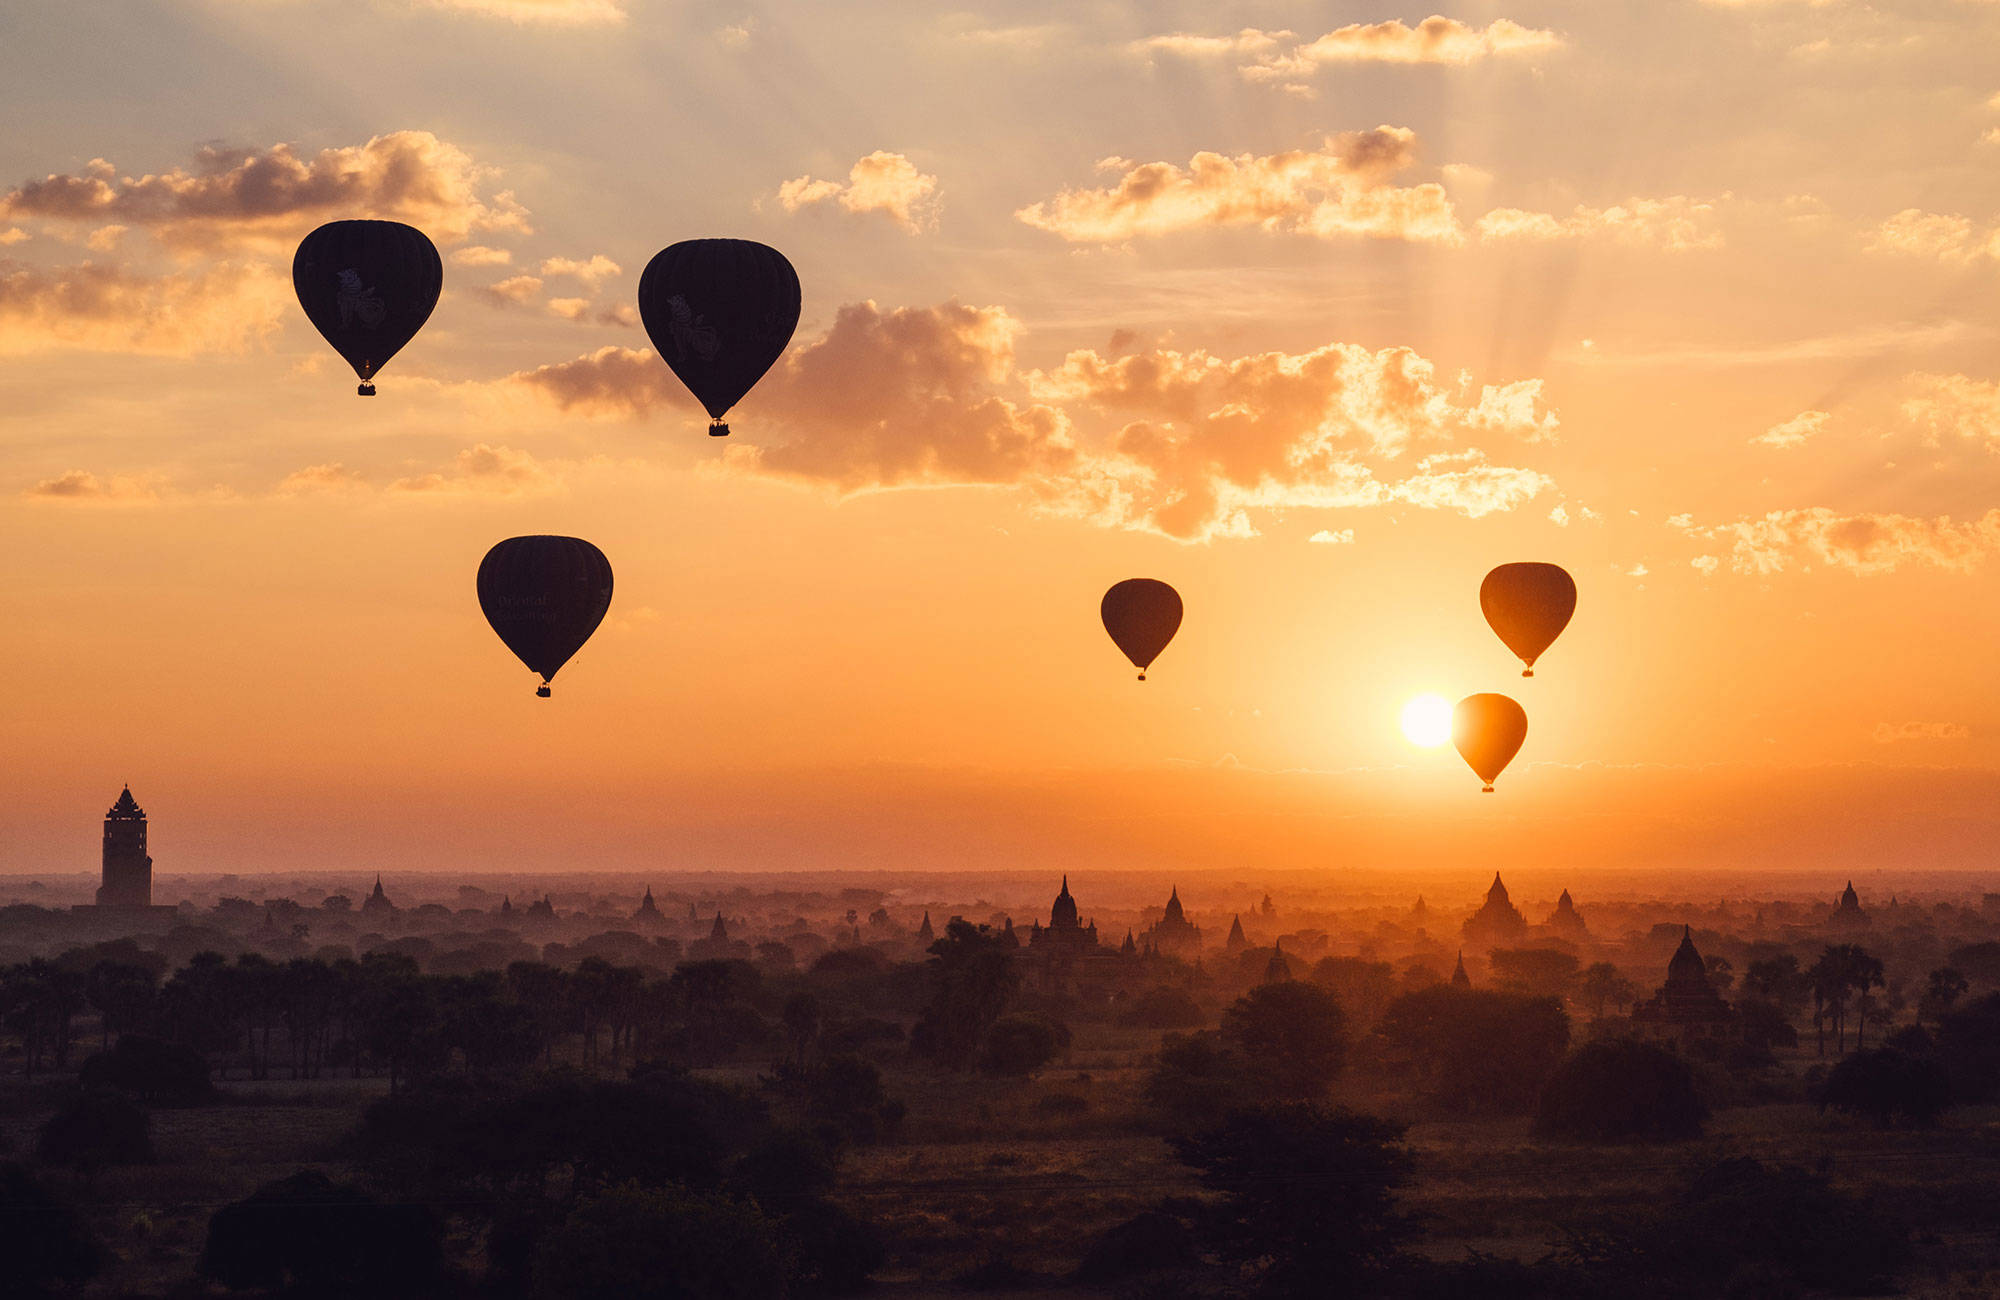 bagan-myanmar-balloons-sunset